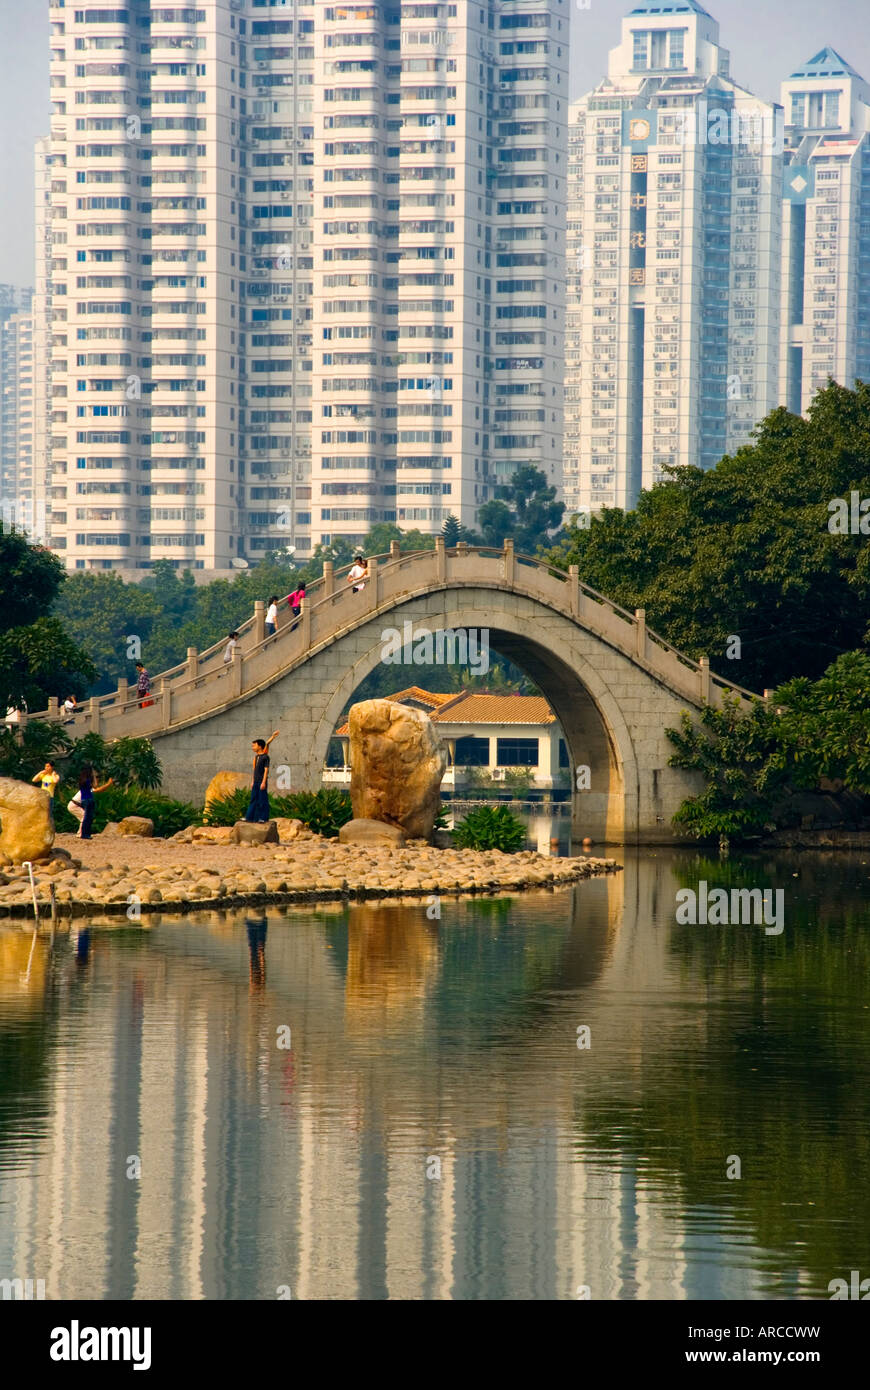 Parc de litchis, Pont Shenzhen Zone économique spéciale (ZES), Guangdong, China, Asia Banque D'Images